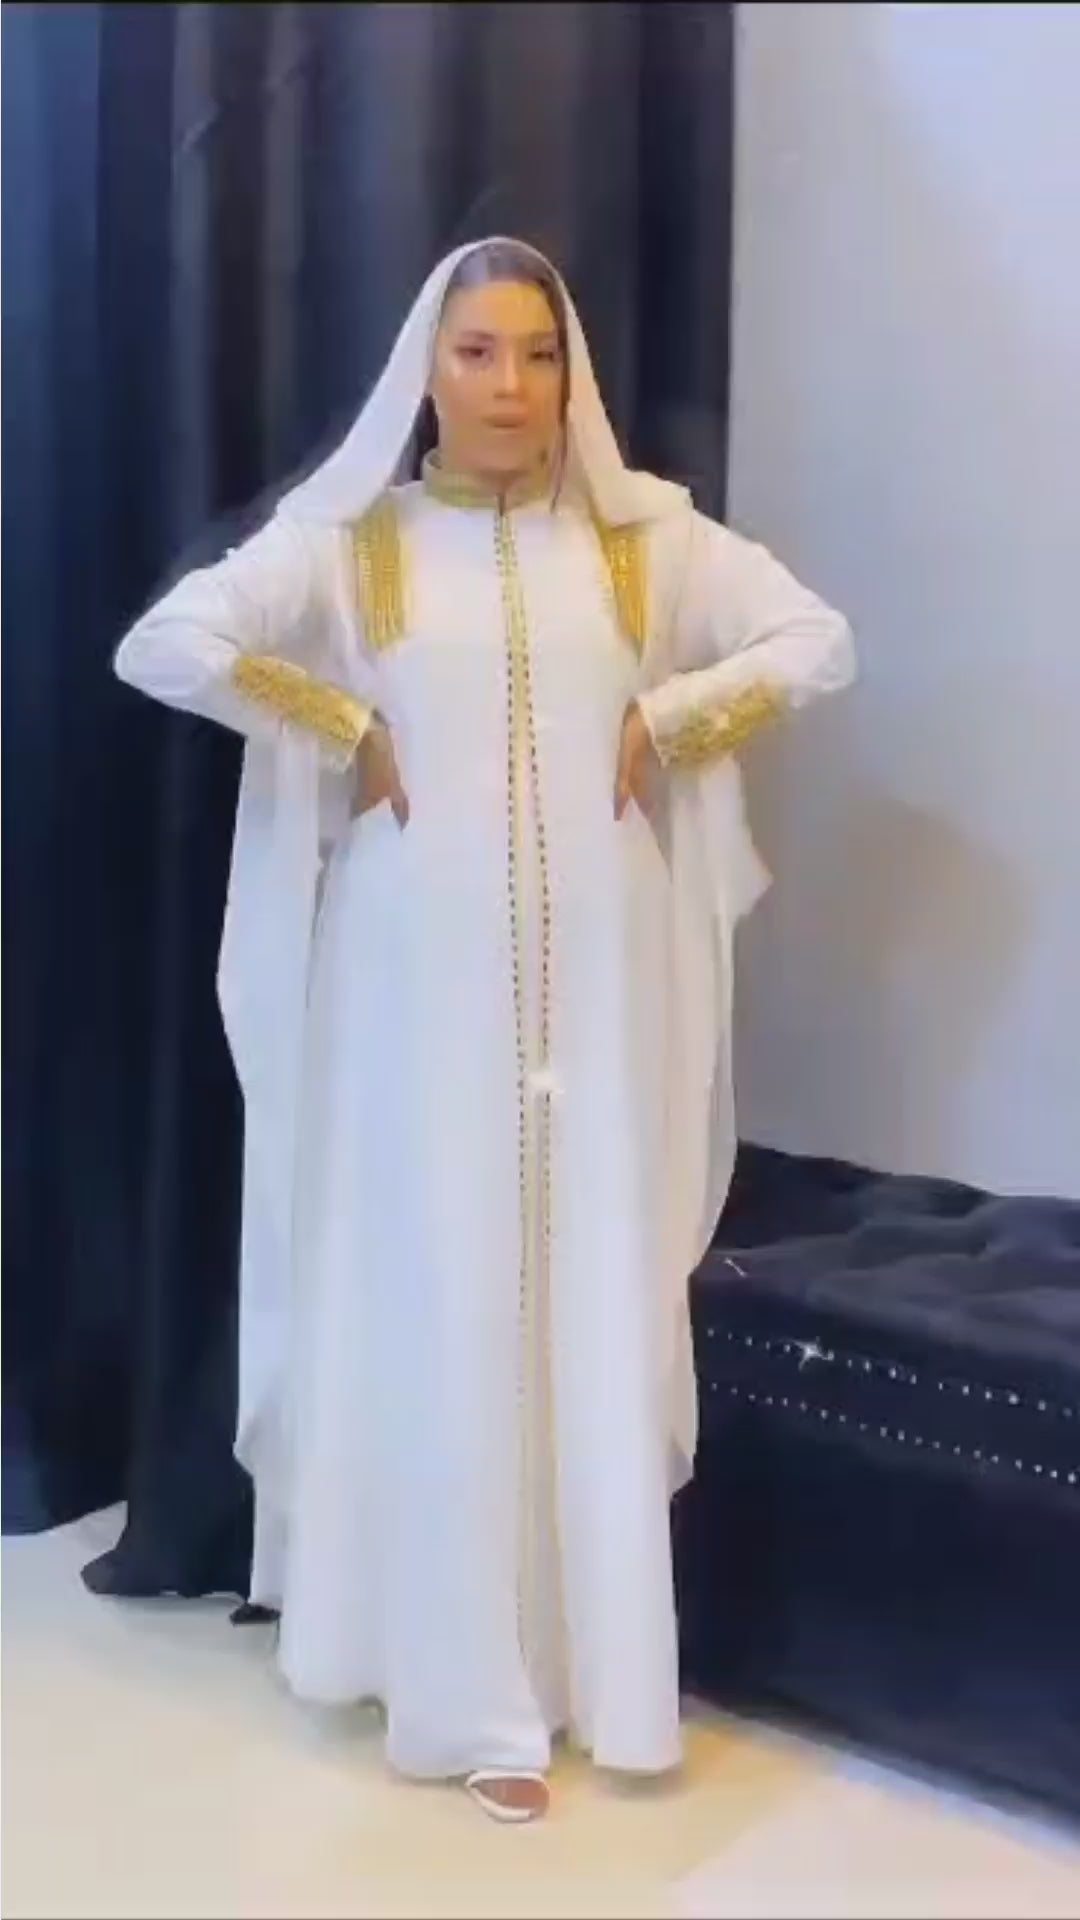 Dubai Abaya